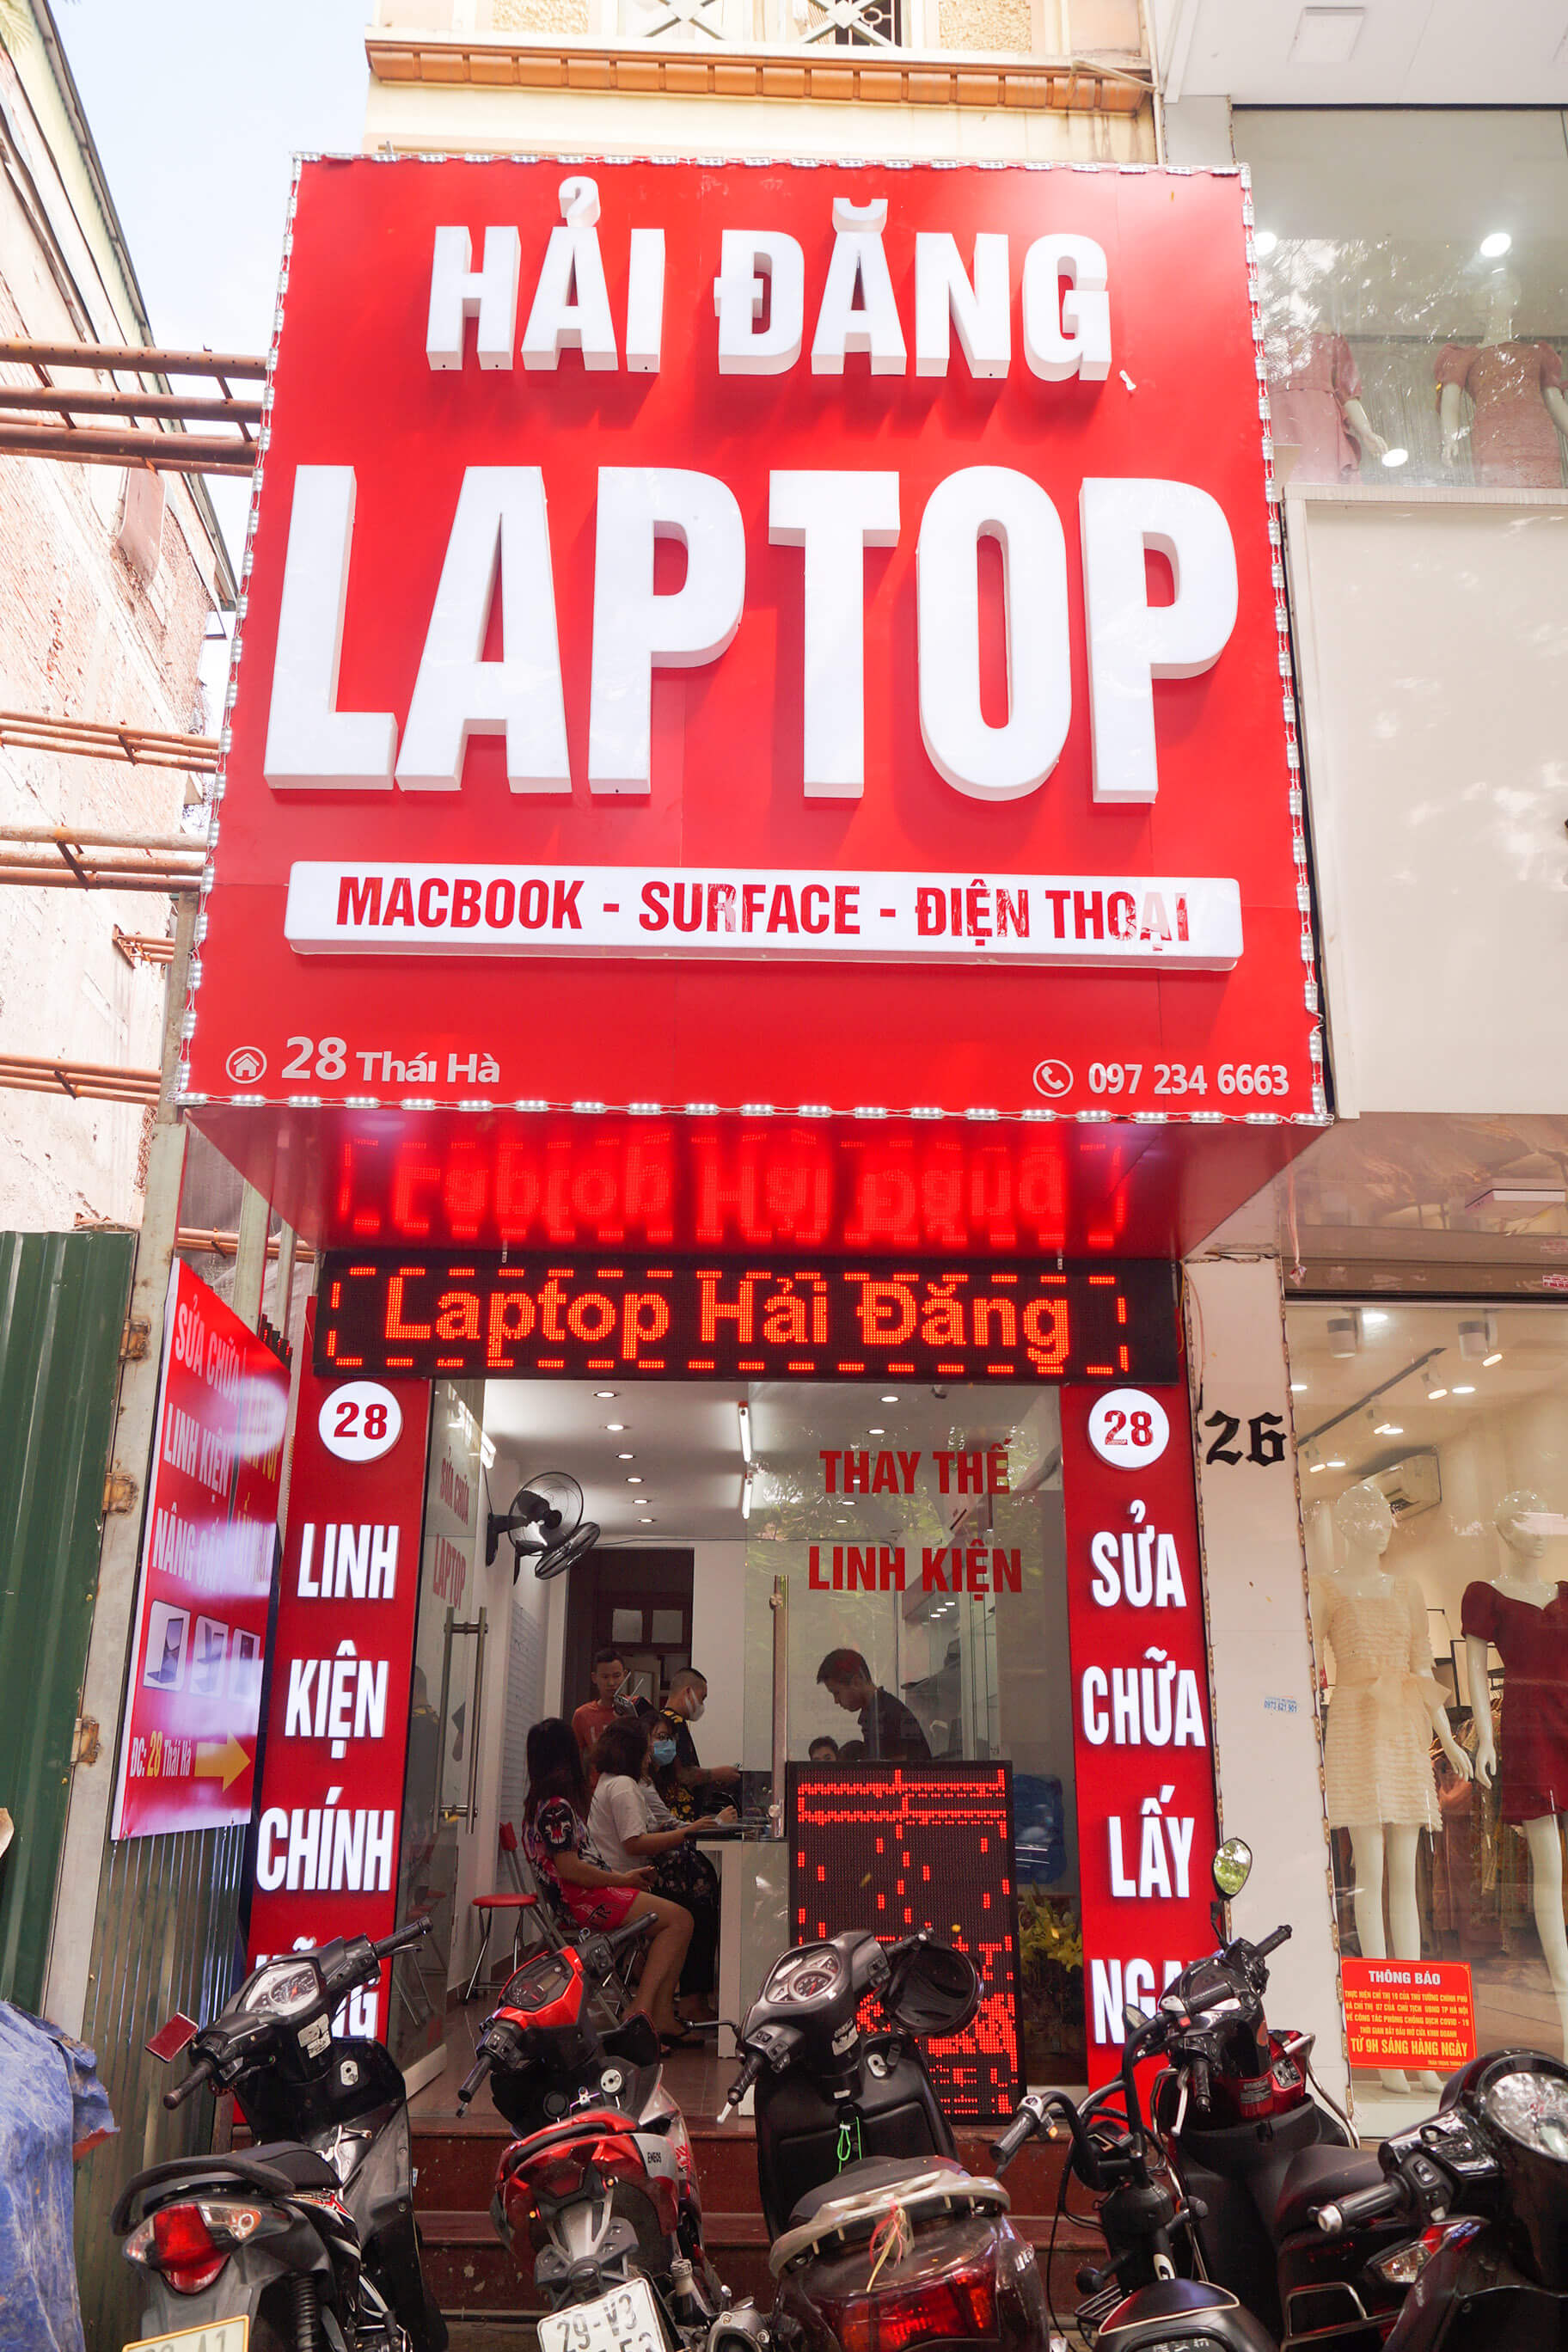 bin laptop